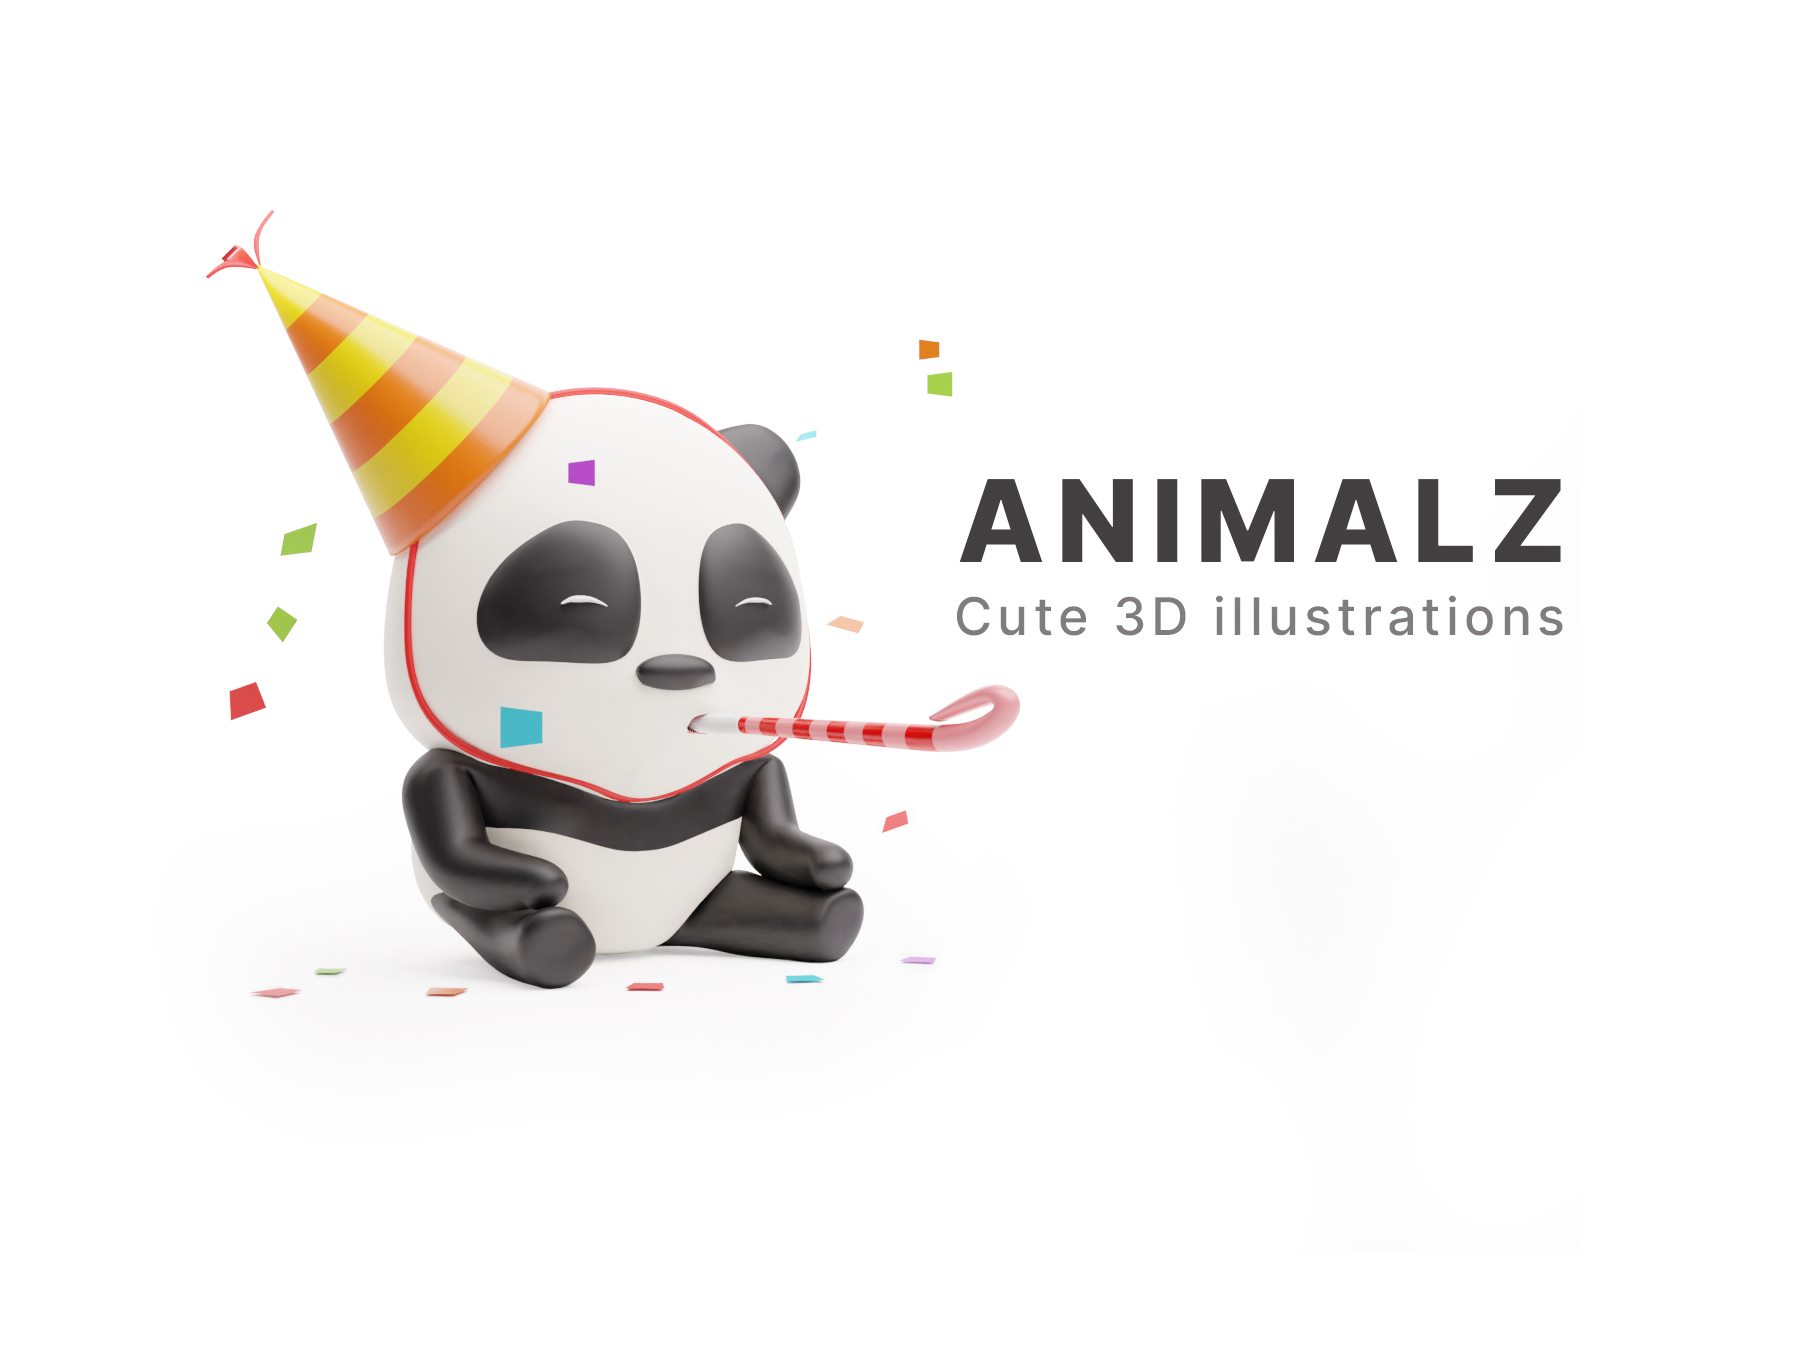 可爱的卡通动物插画3D模型素材下载 ANIMALZ - cute 3D animals